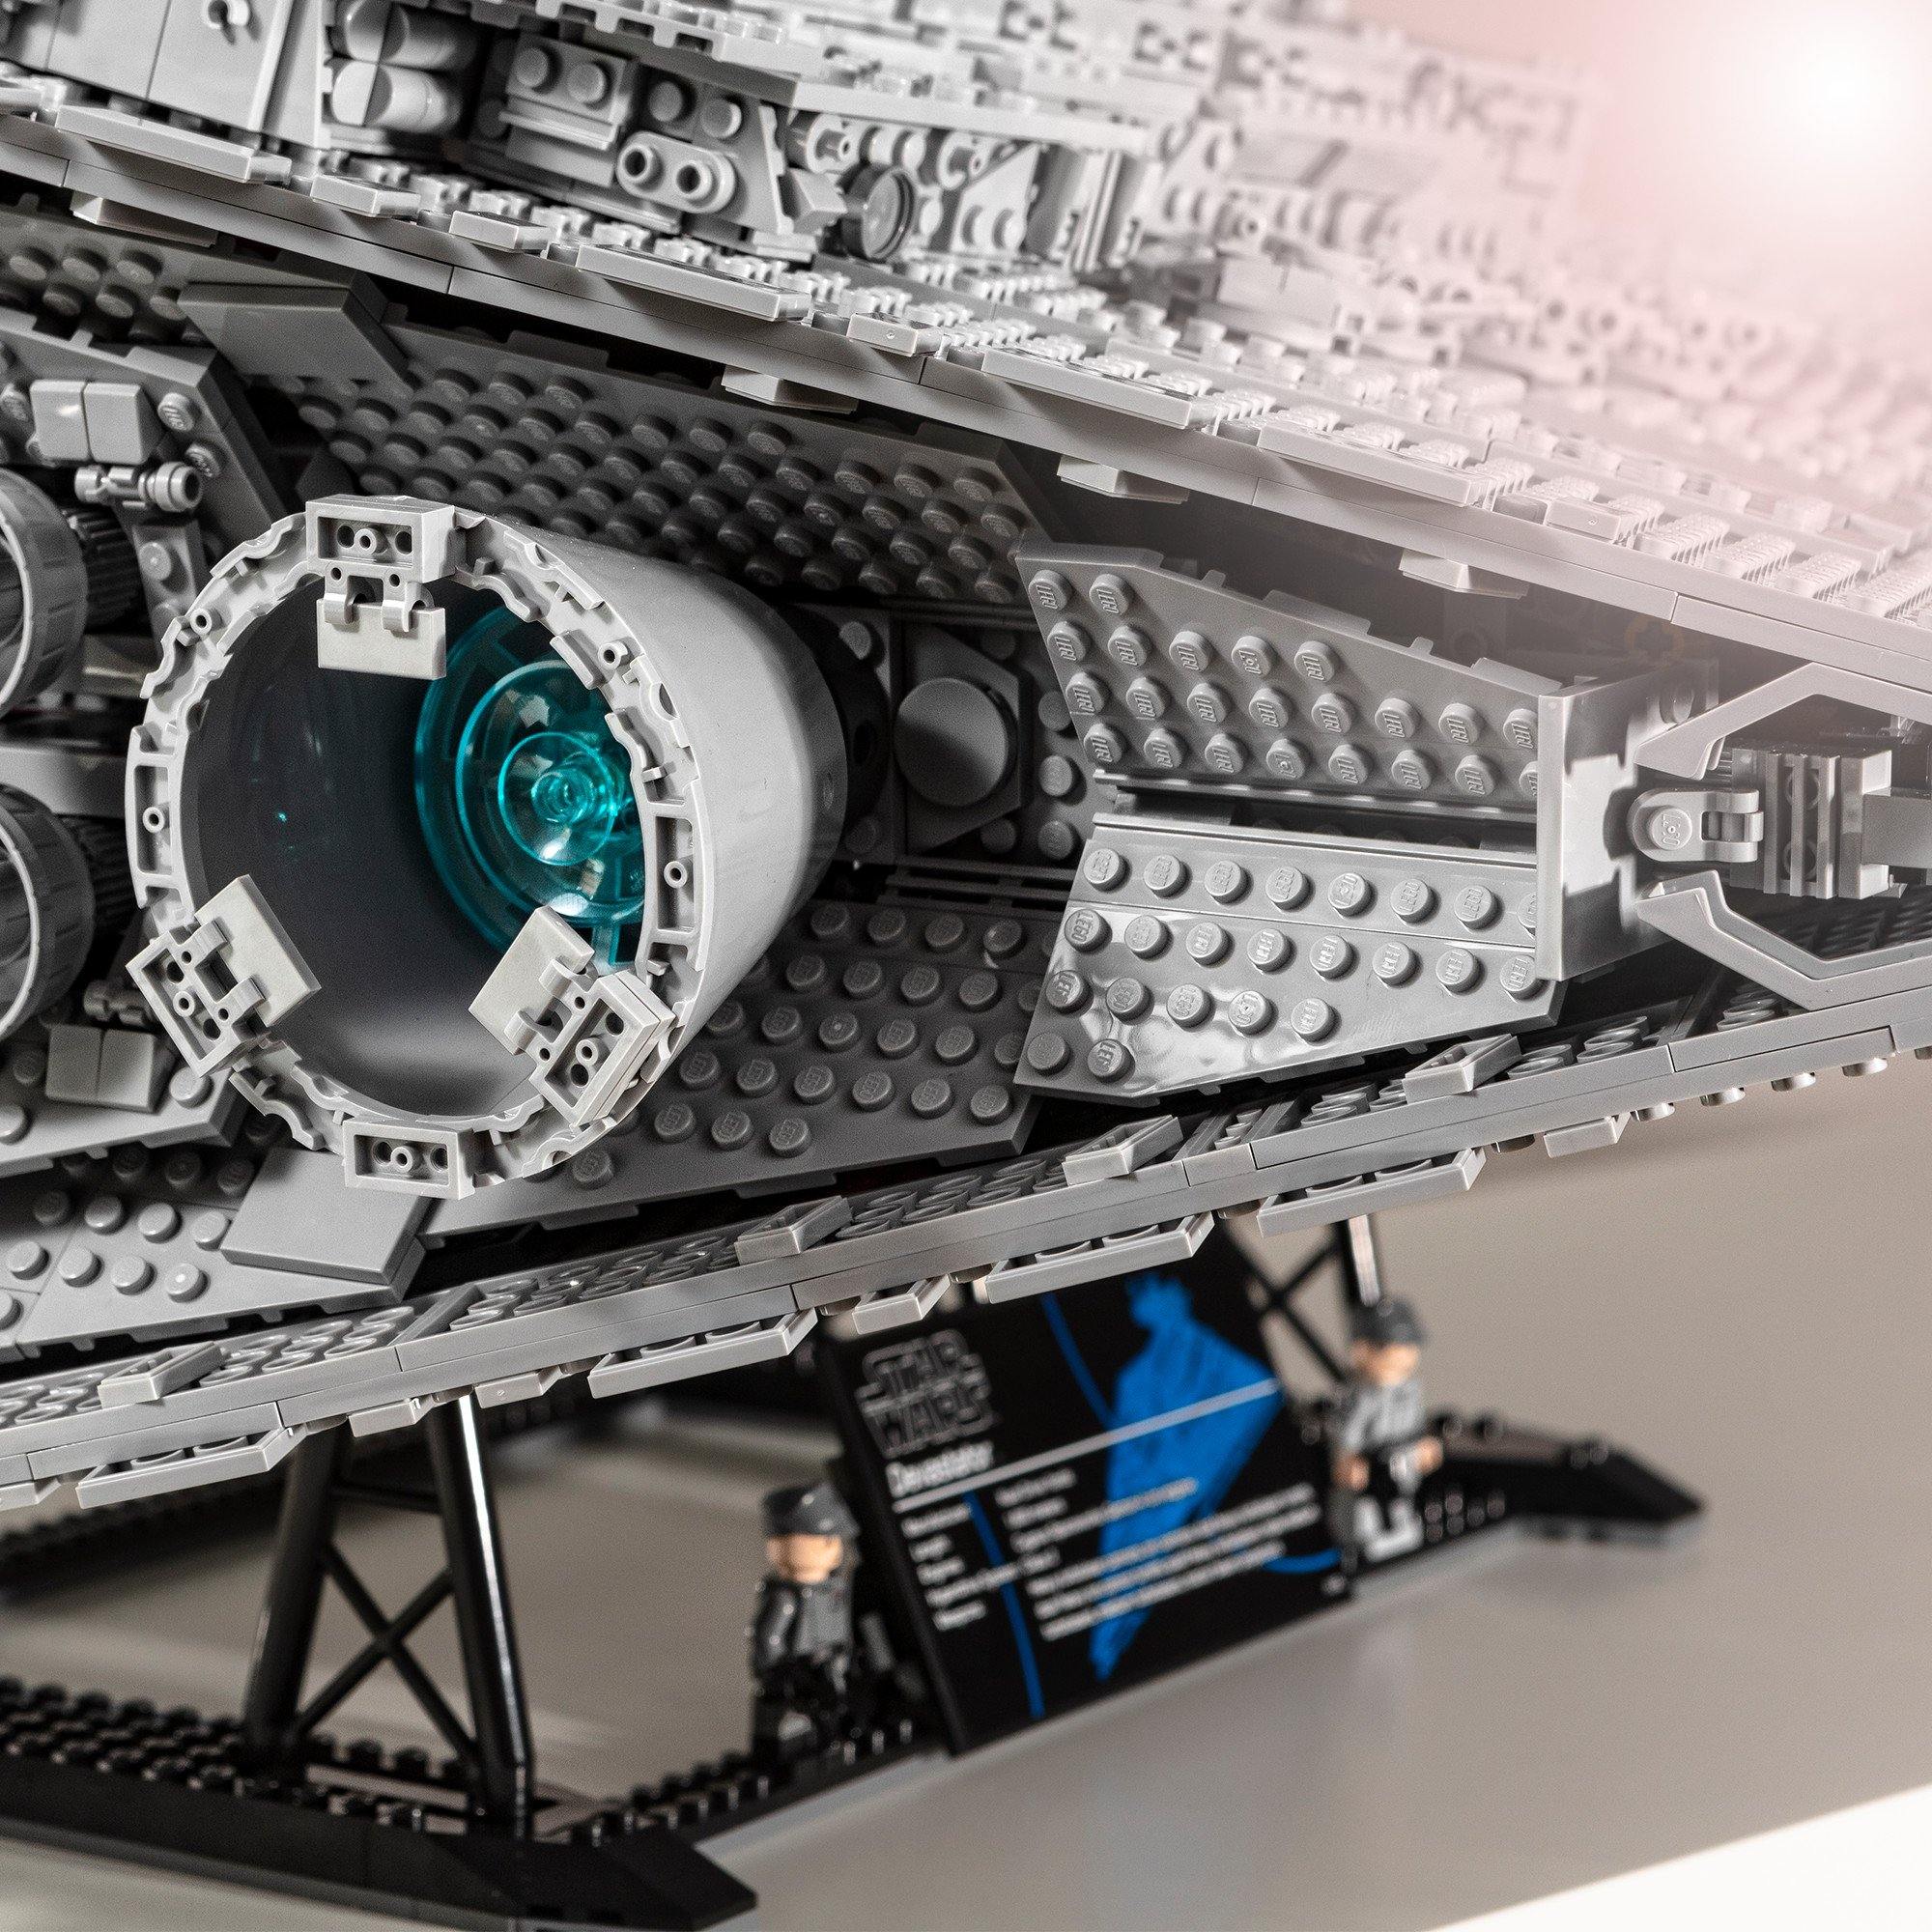 Imperal Star Destroyer - LEGO® Store Hrvatska